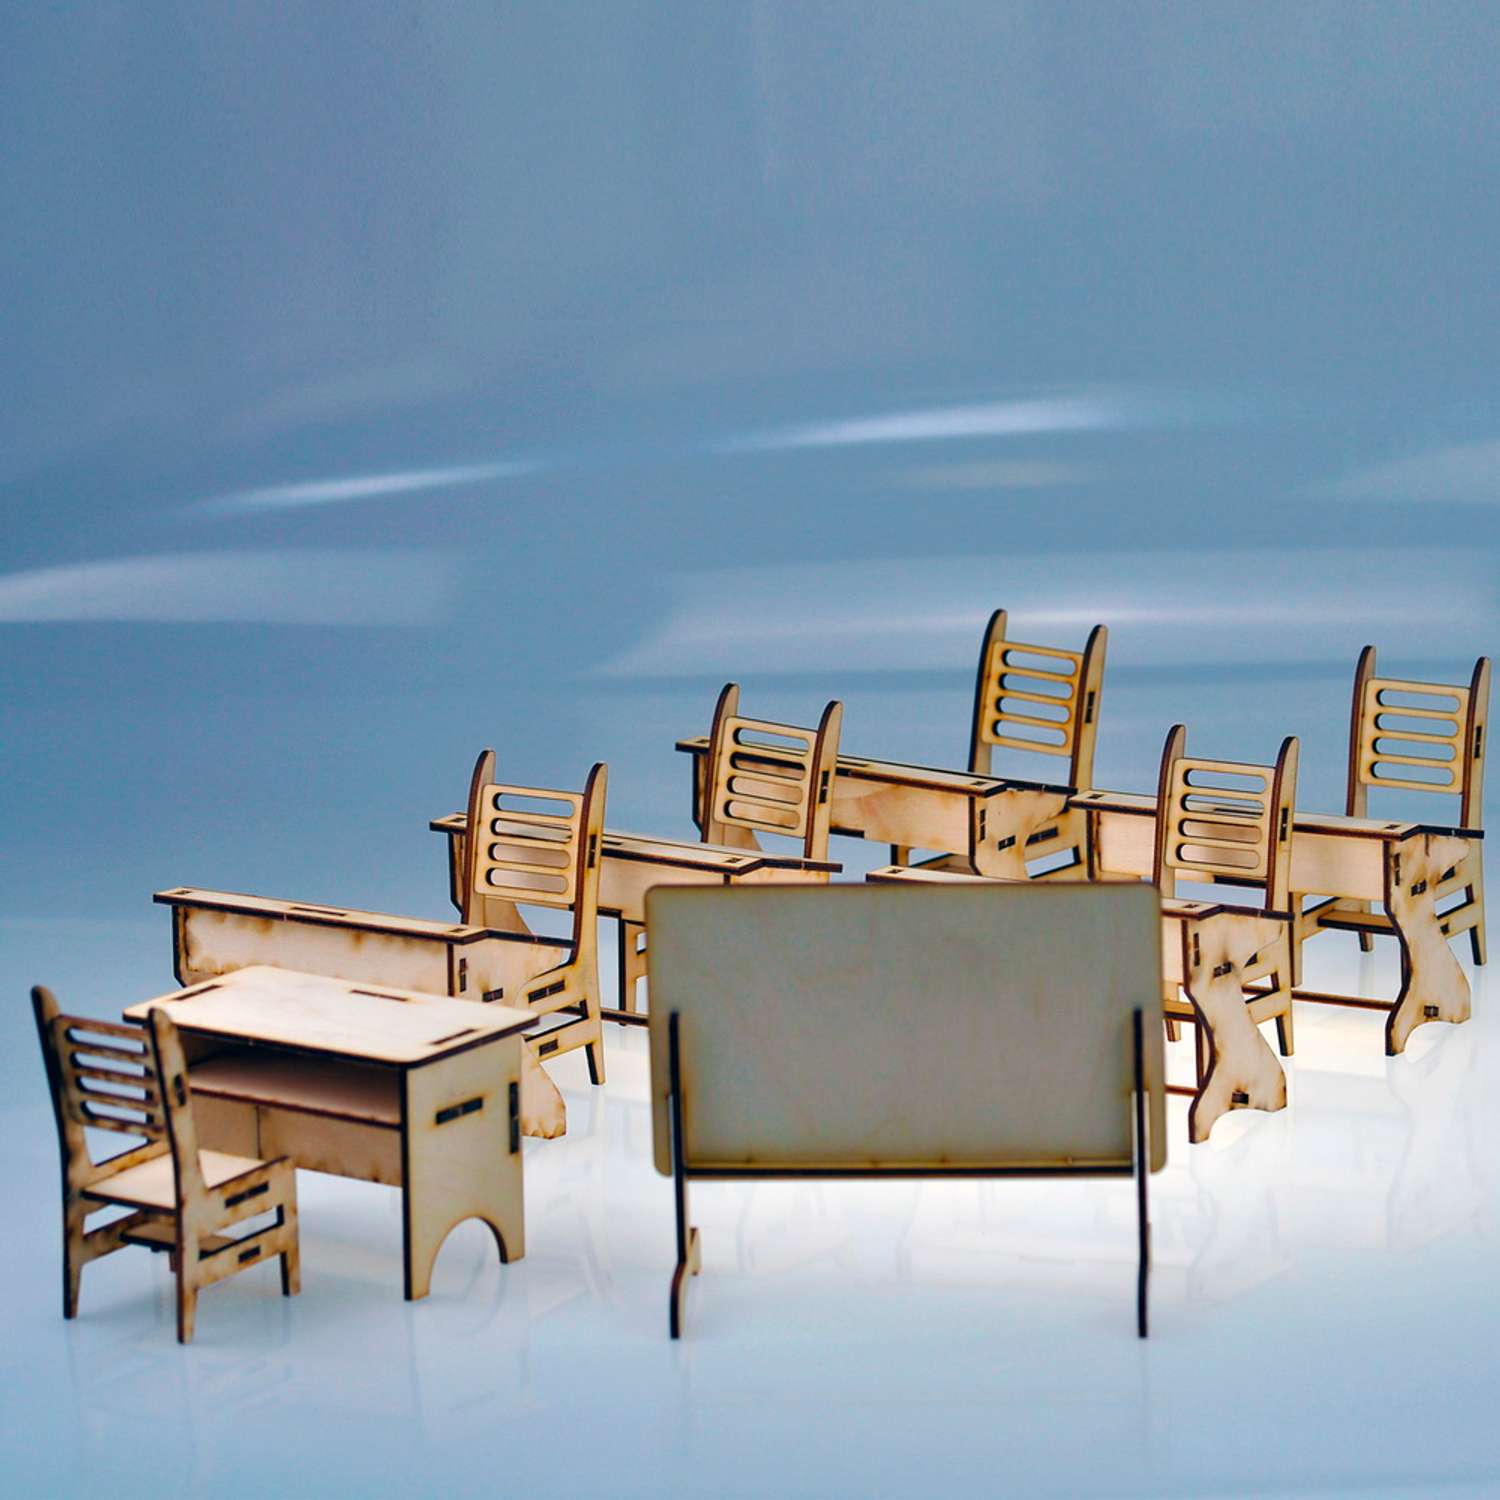 Игровой деревянный класс Amazwood 5 парт- учительский стол - доска - 6 стульев - 6 кукол AW1006 - фото 8